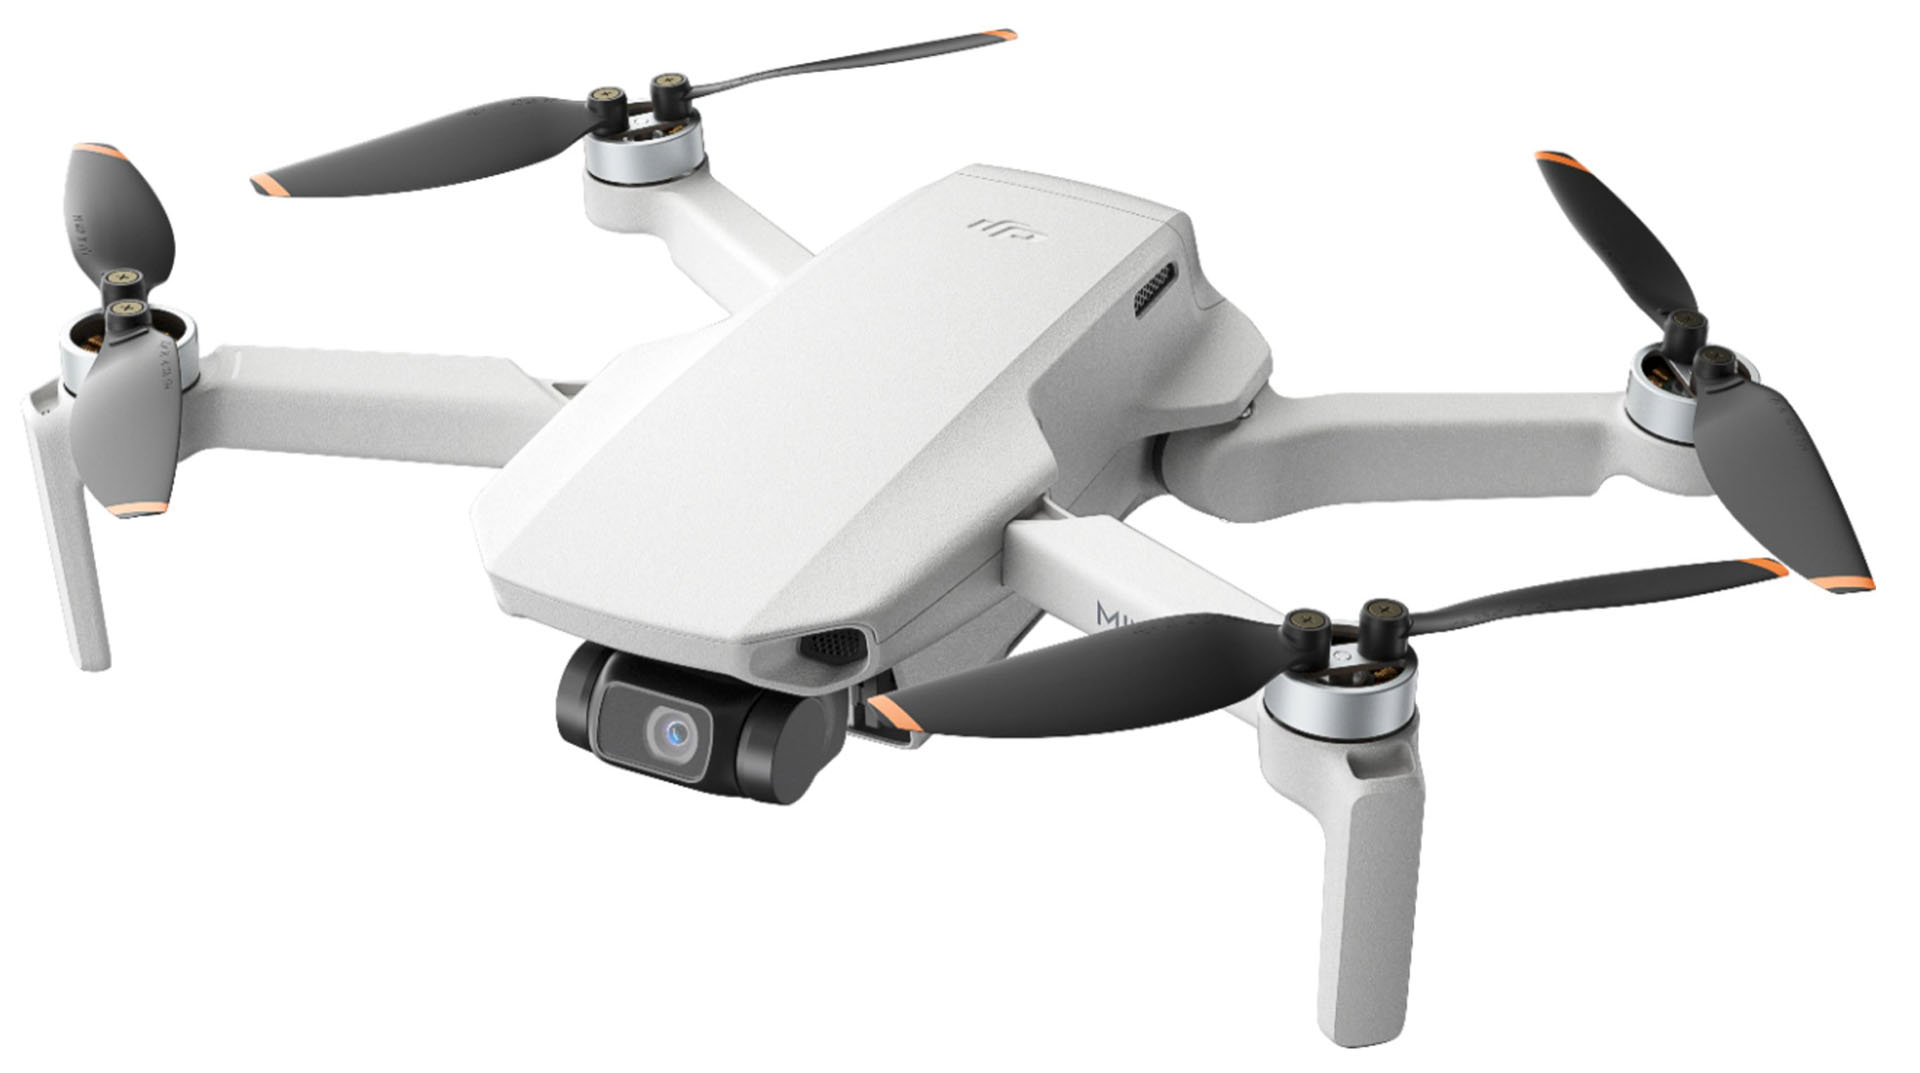 Drone Mini SE của DJI sẽ có giá bán từ 7,490,000 VND và chỉ nặng 249g